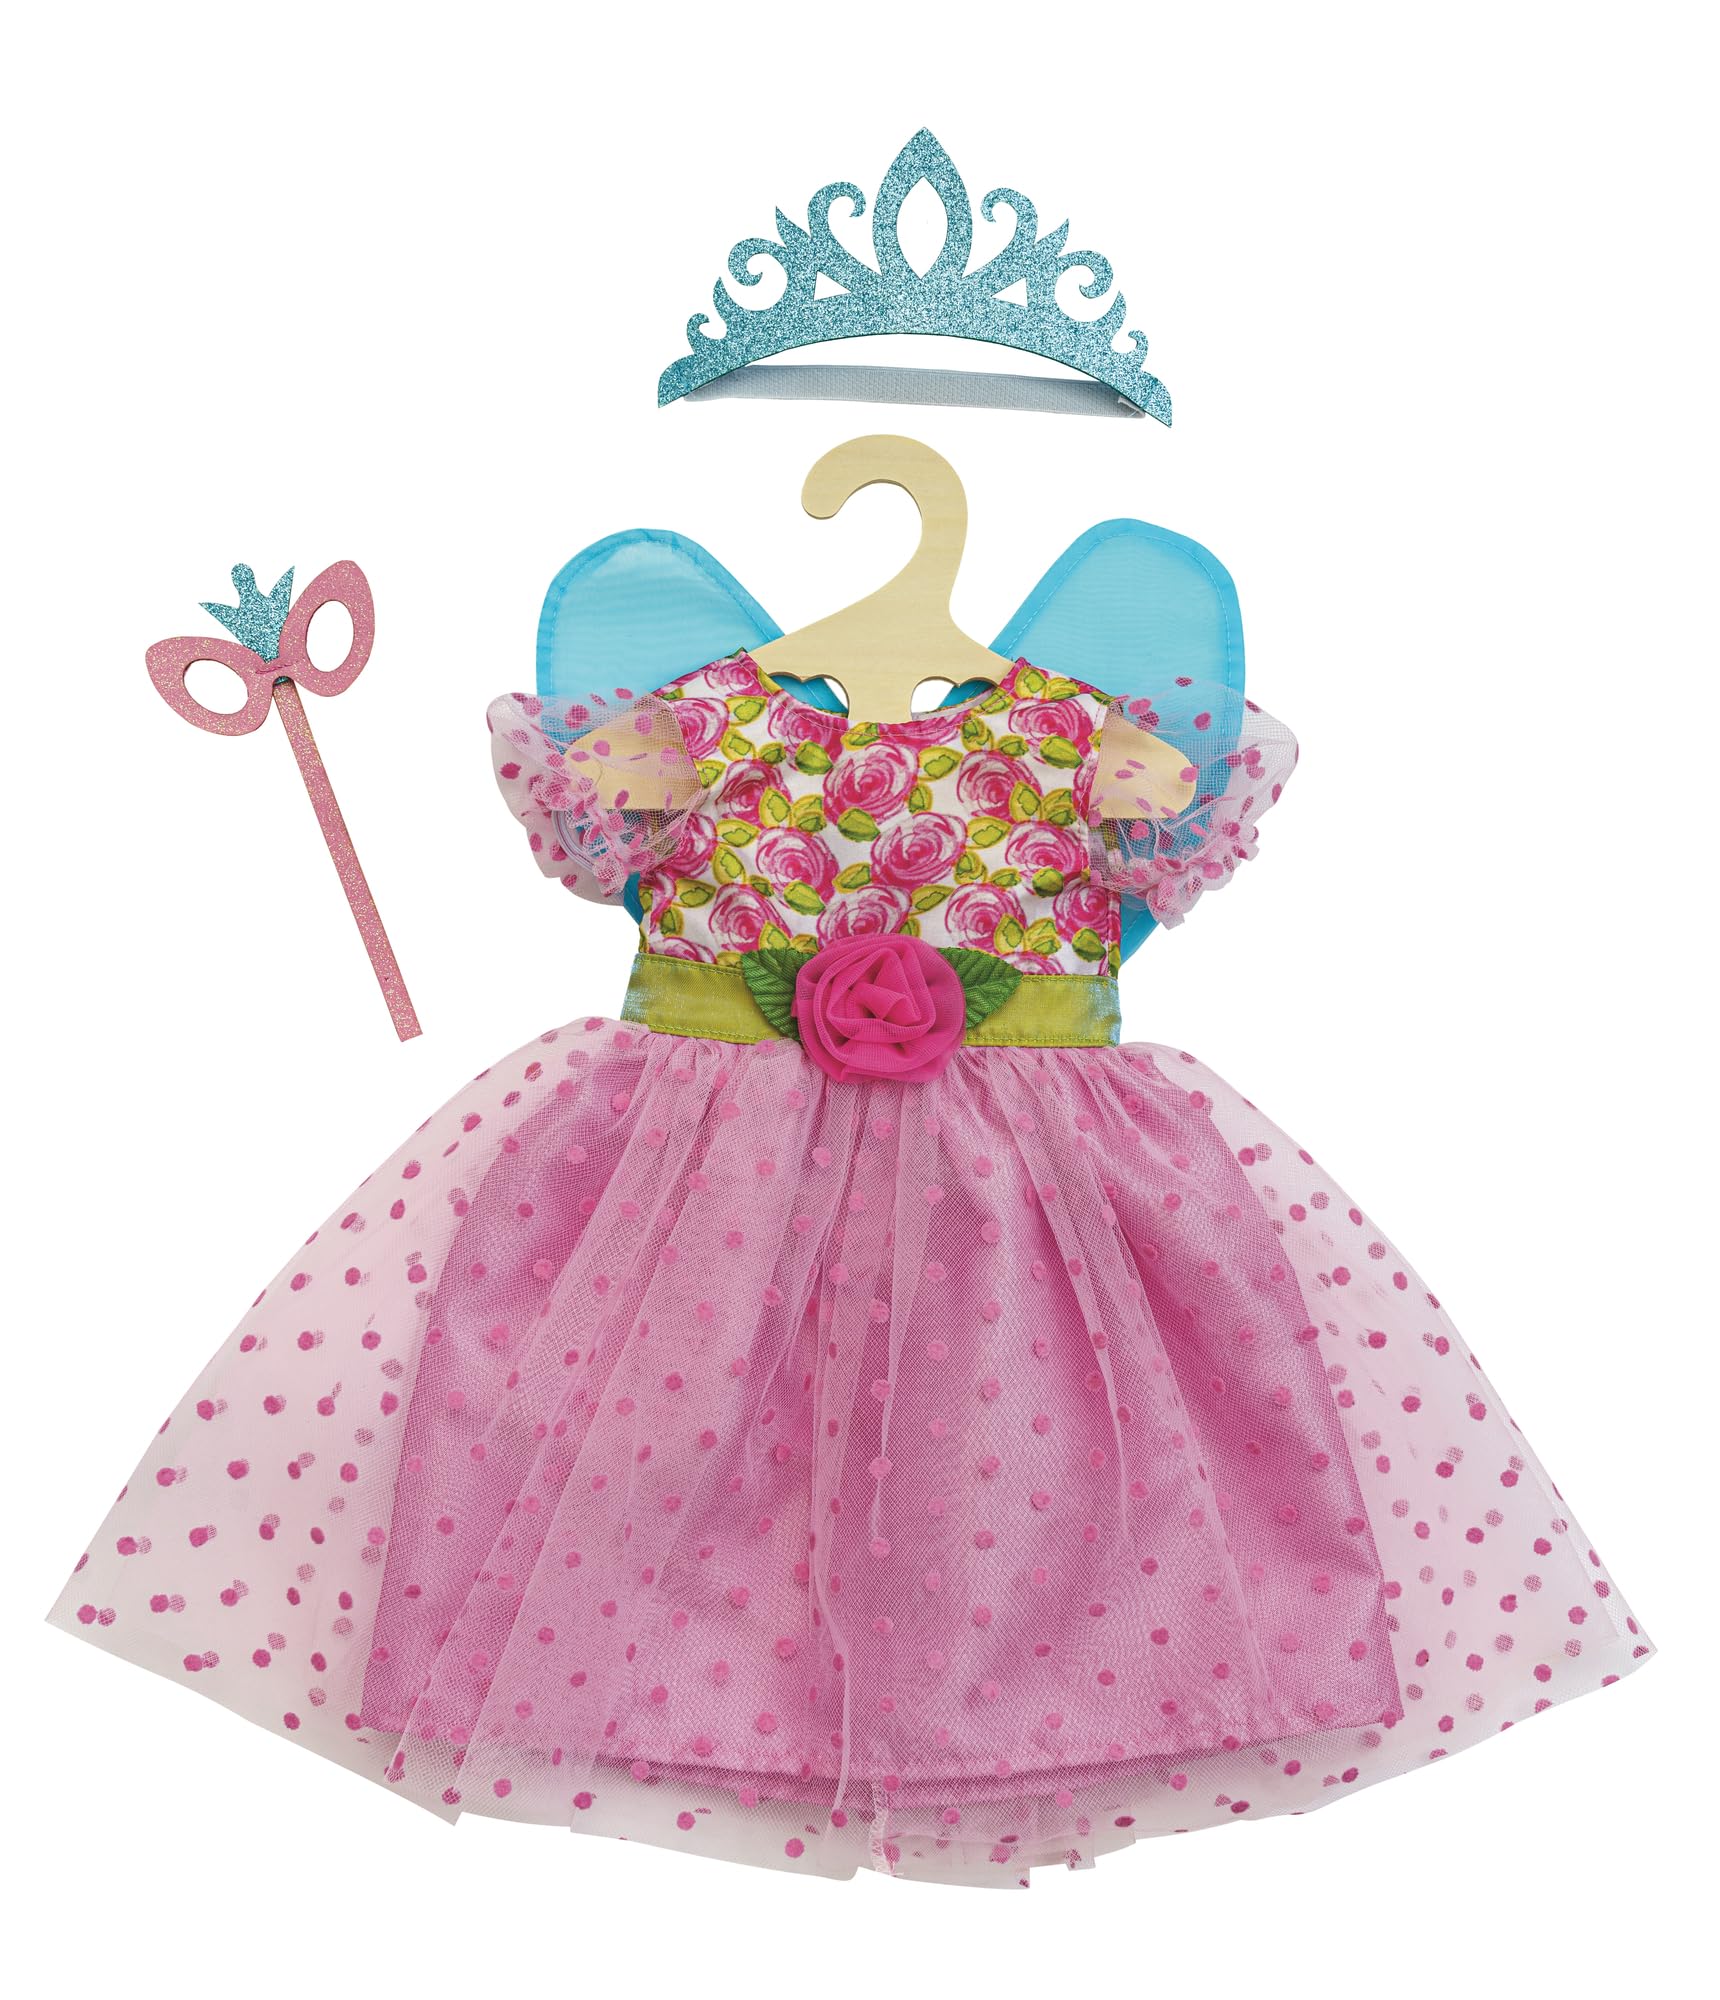 Heless 2440 - Puppenkleidung im Design Prinzessin Lillifee, Kleid inkl. Glitzerkrone und Augenmaske für Puppen und Kuscheltiere der Größe 35-45 cm